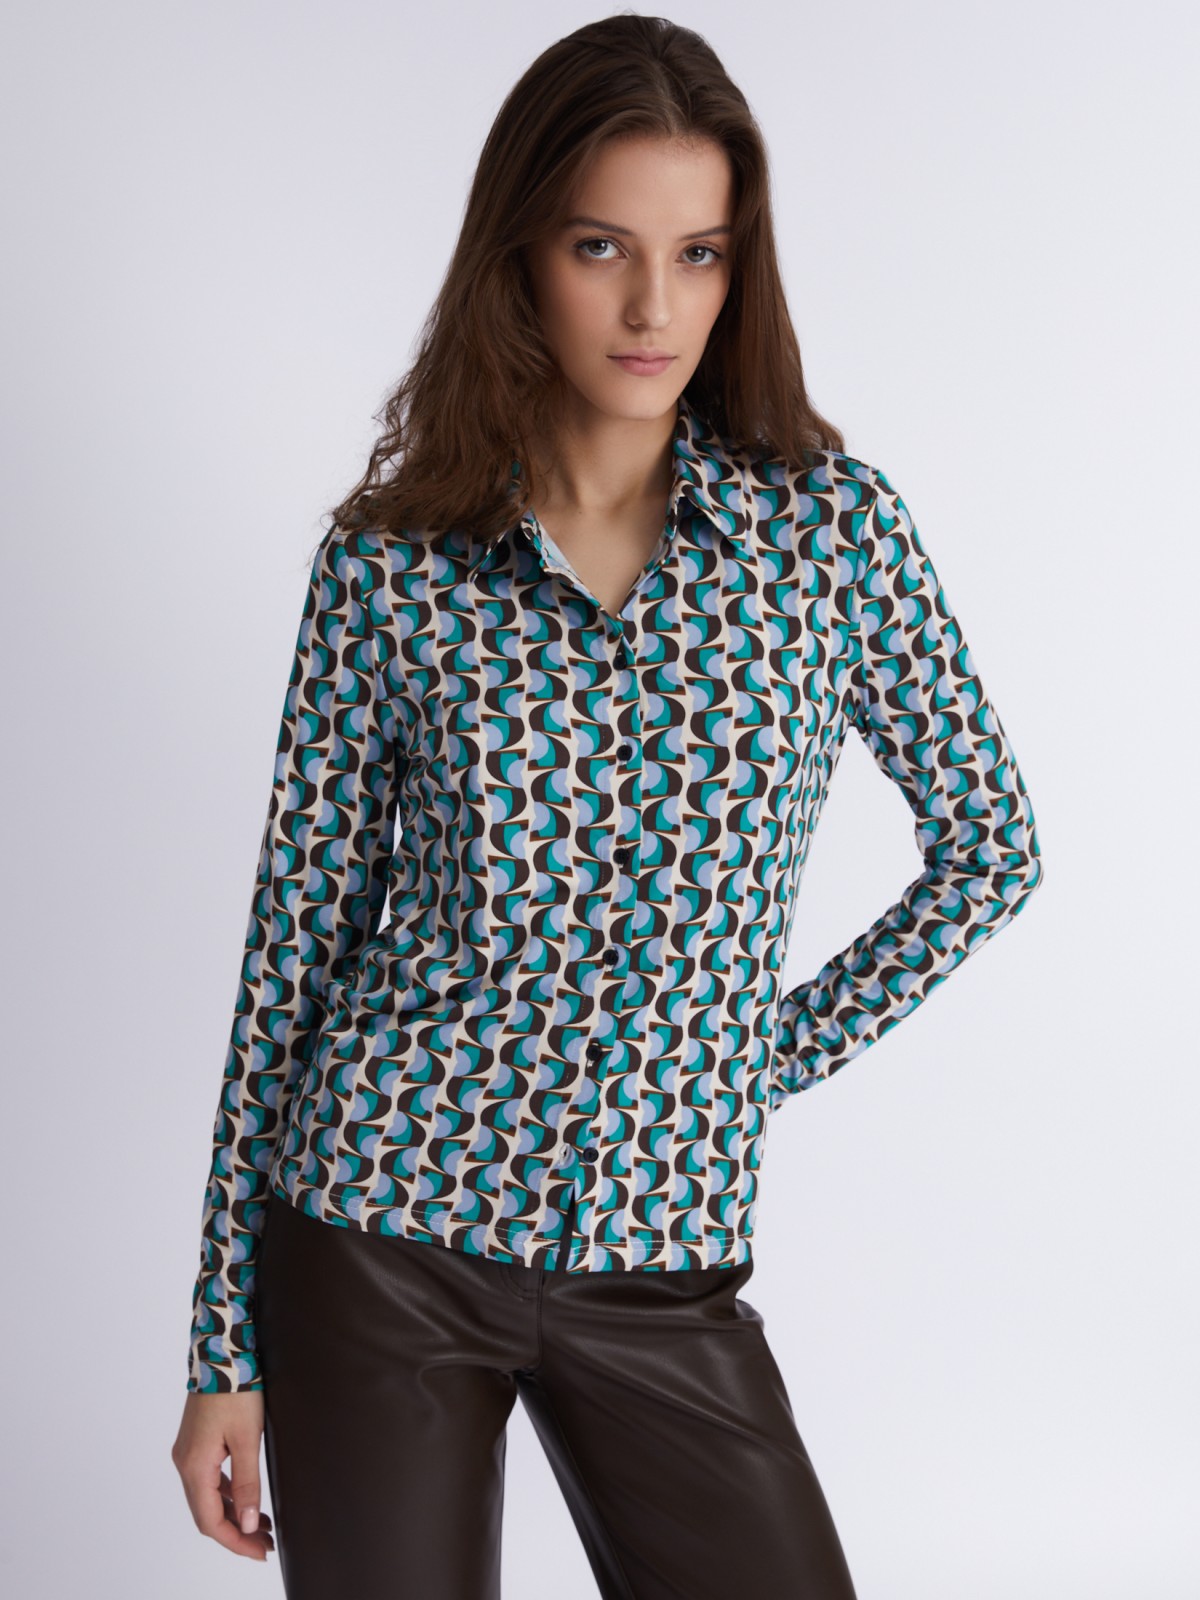 Трикотажная блузка-рубашка с абстрактным геометрическим принтом zolla 023321159233, цвет голубой, размер S - фото 5